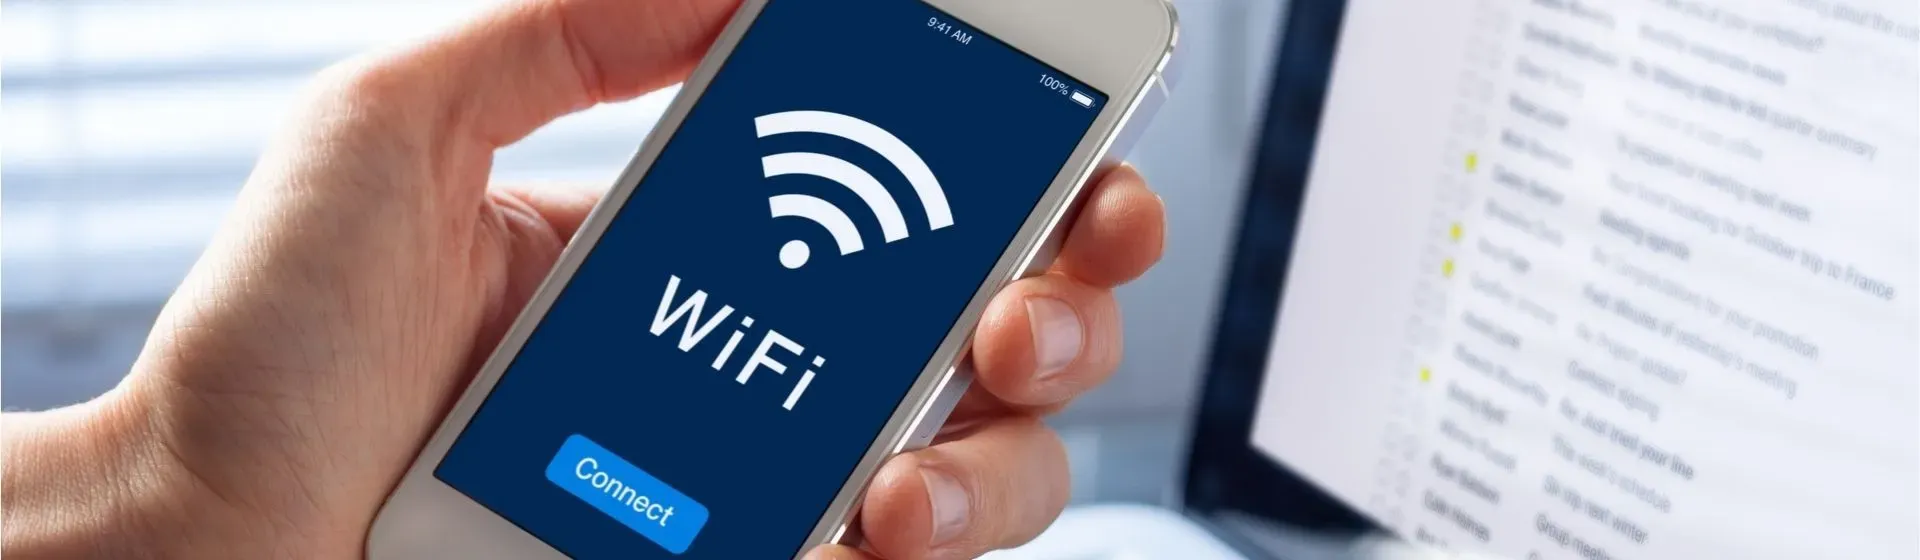 Como descobrir a senha do Wi-Fi pelo celular já conectado